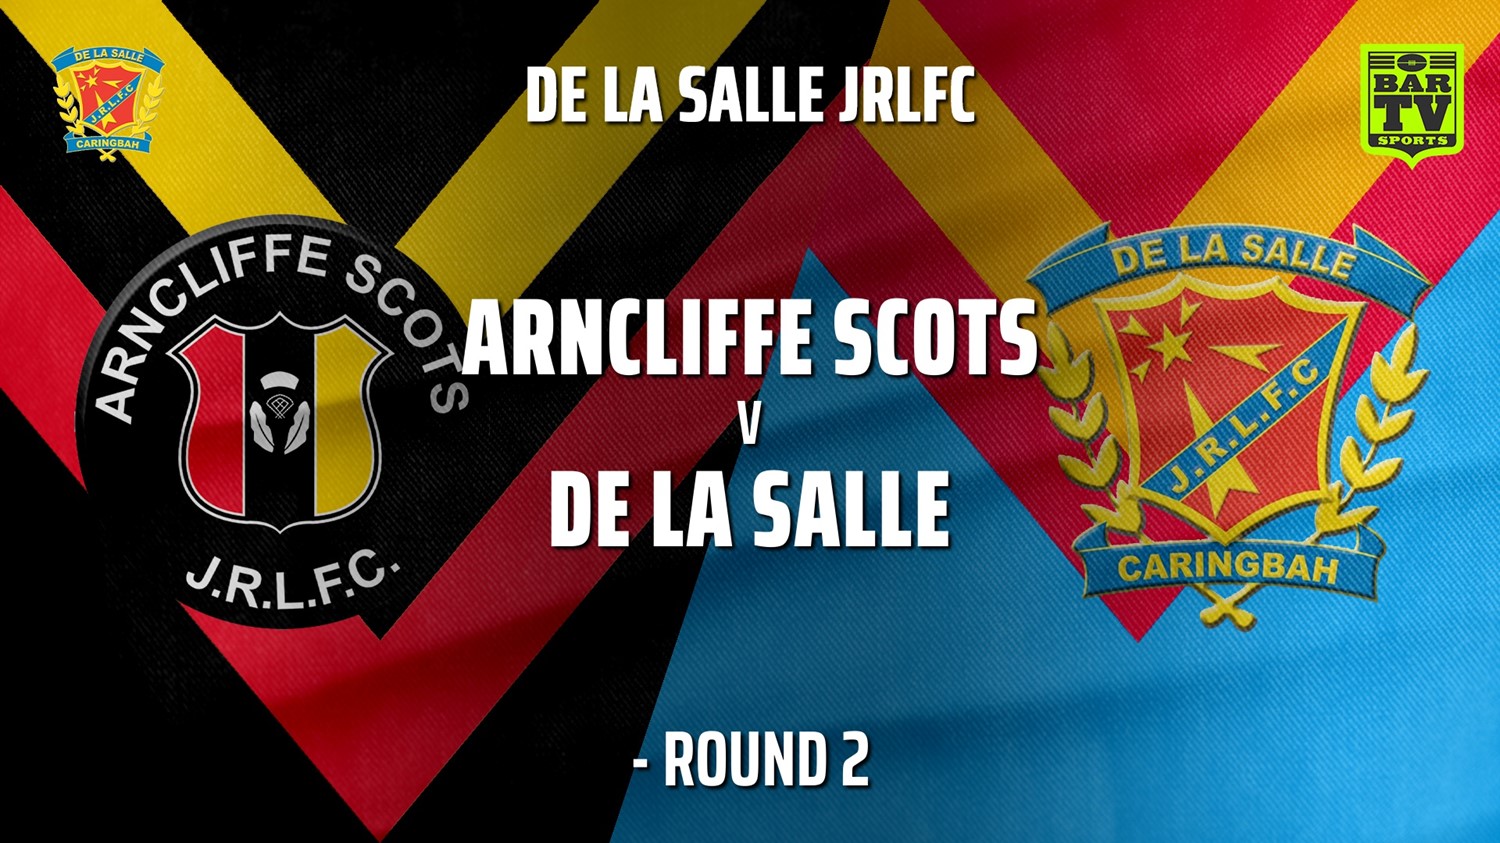 210508-De La Salle Round 2 - Arncliffe Scots v De La Salle Slate Image